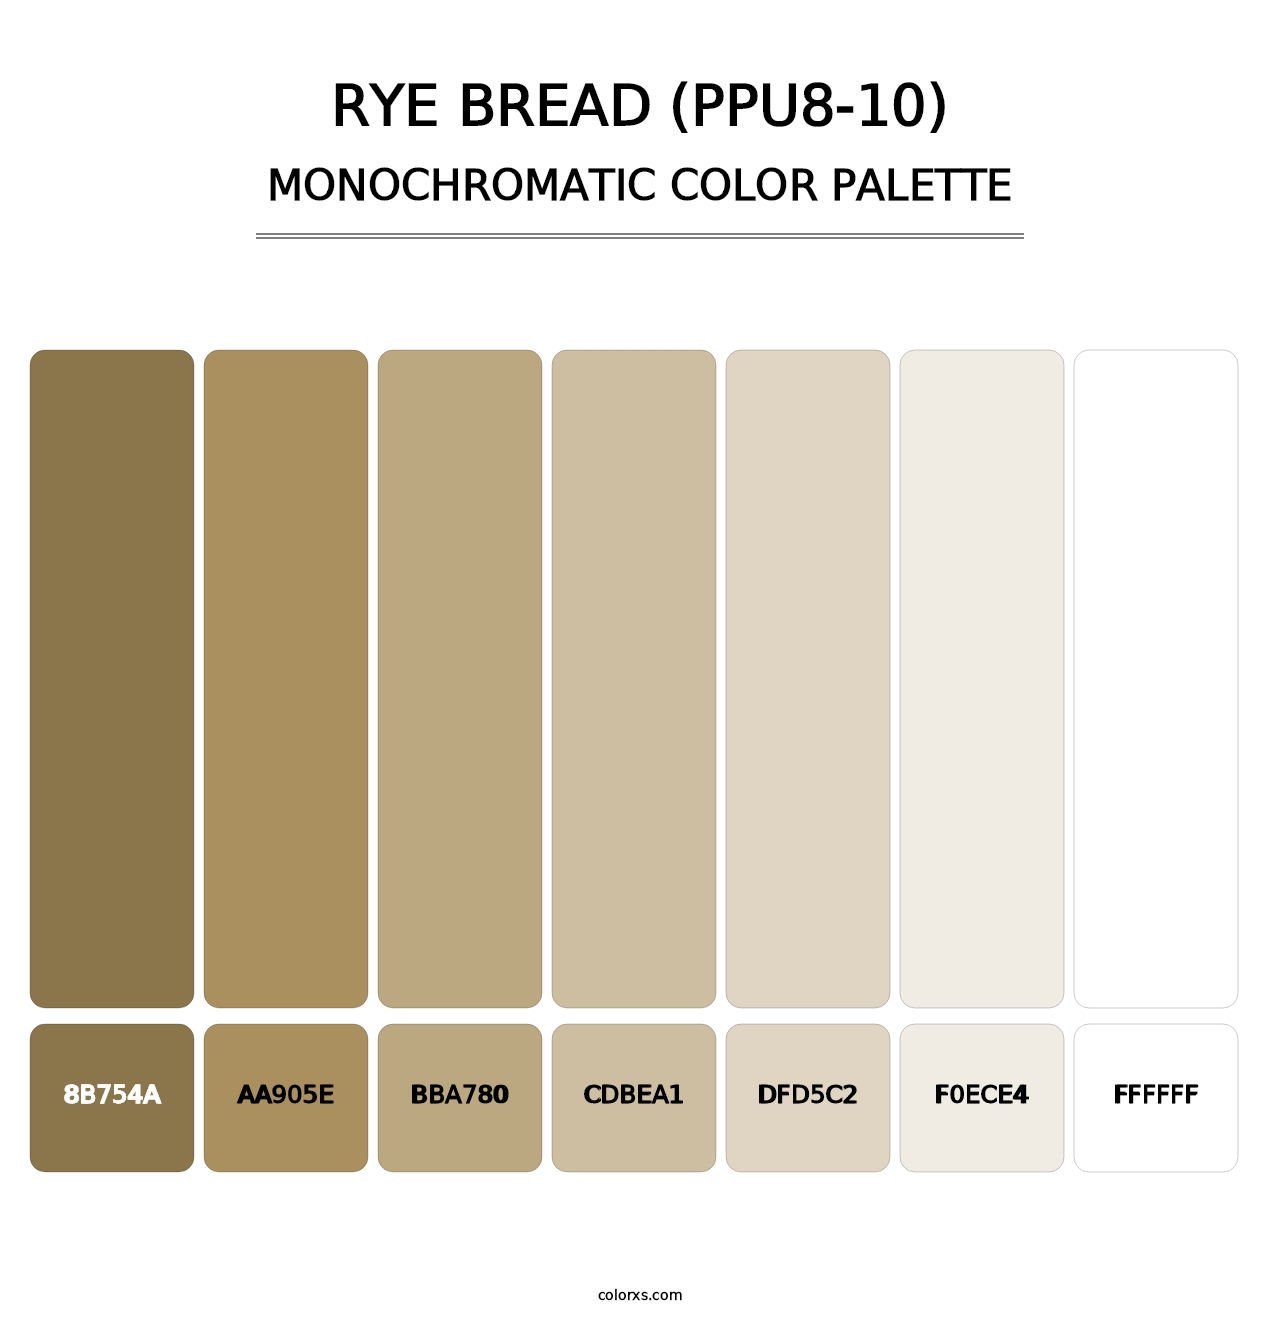 Rye Bread (PPU8-10) - Monochromatic Color Palette